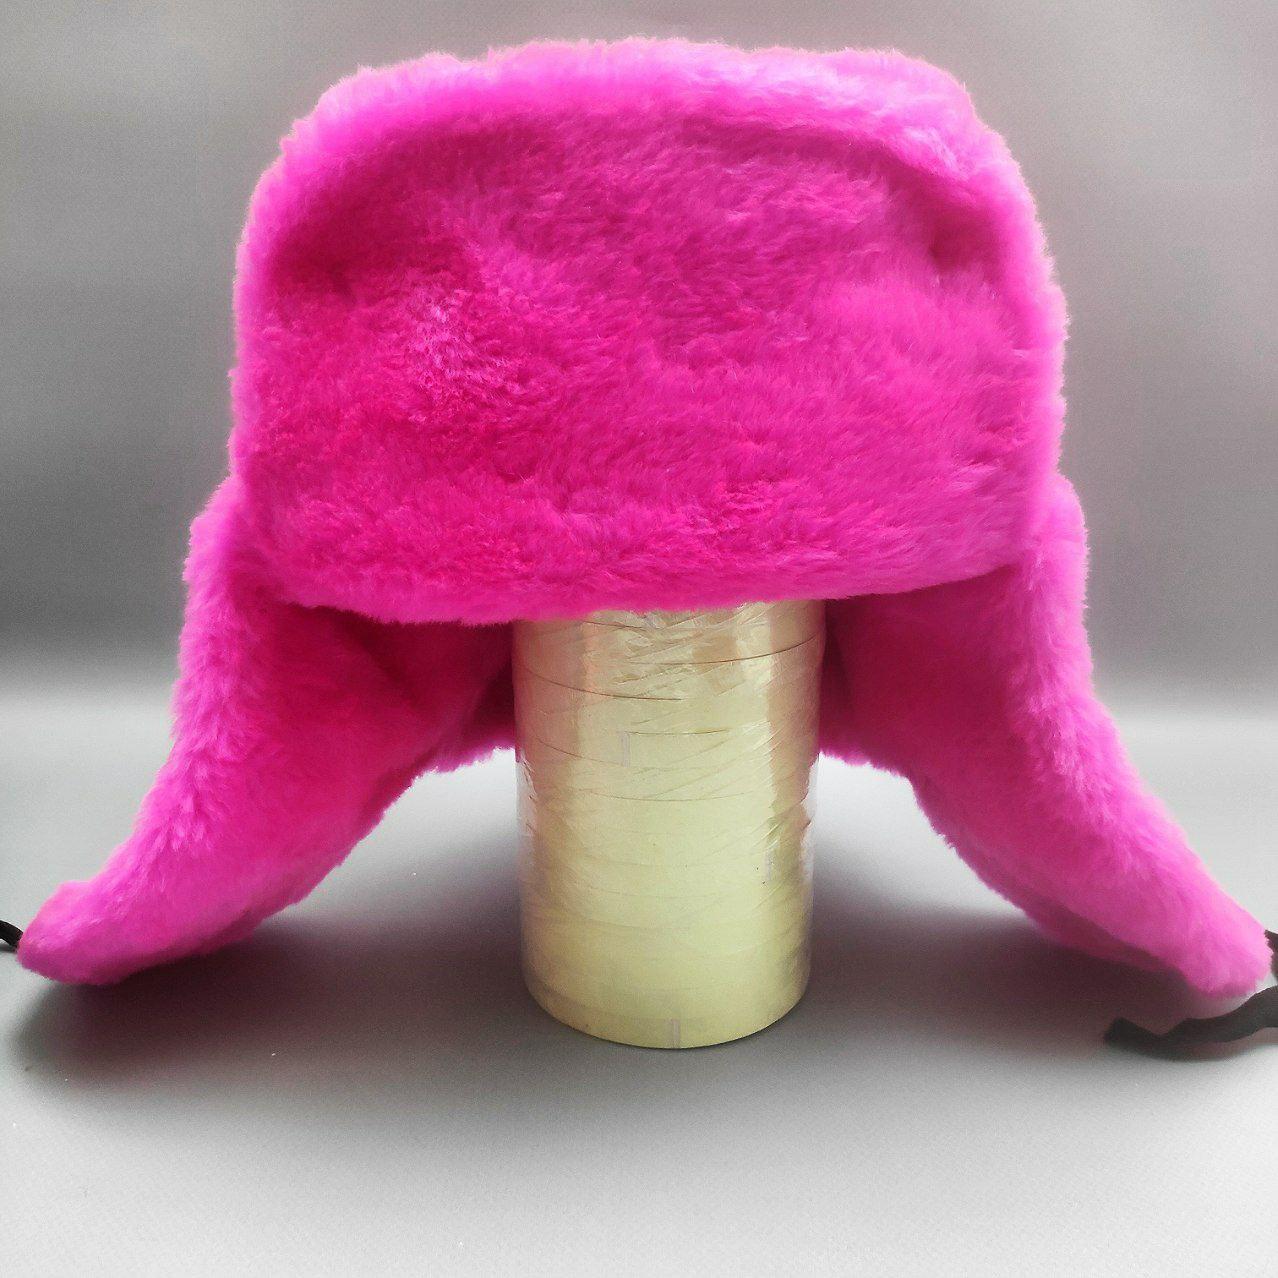 Шапка - ушанка сувенирная "Цветной мех" унисекс, Ярко-розовая 58 размер